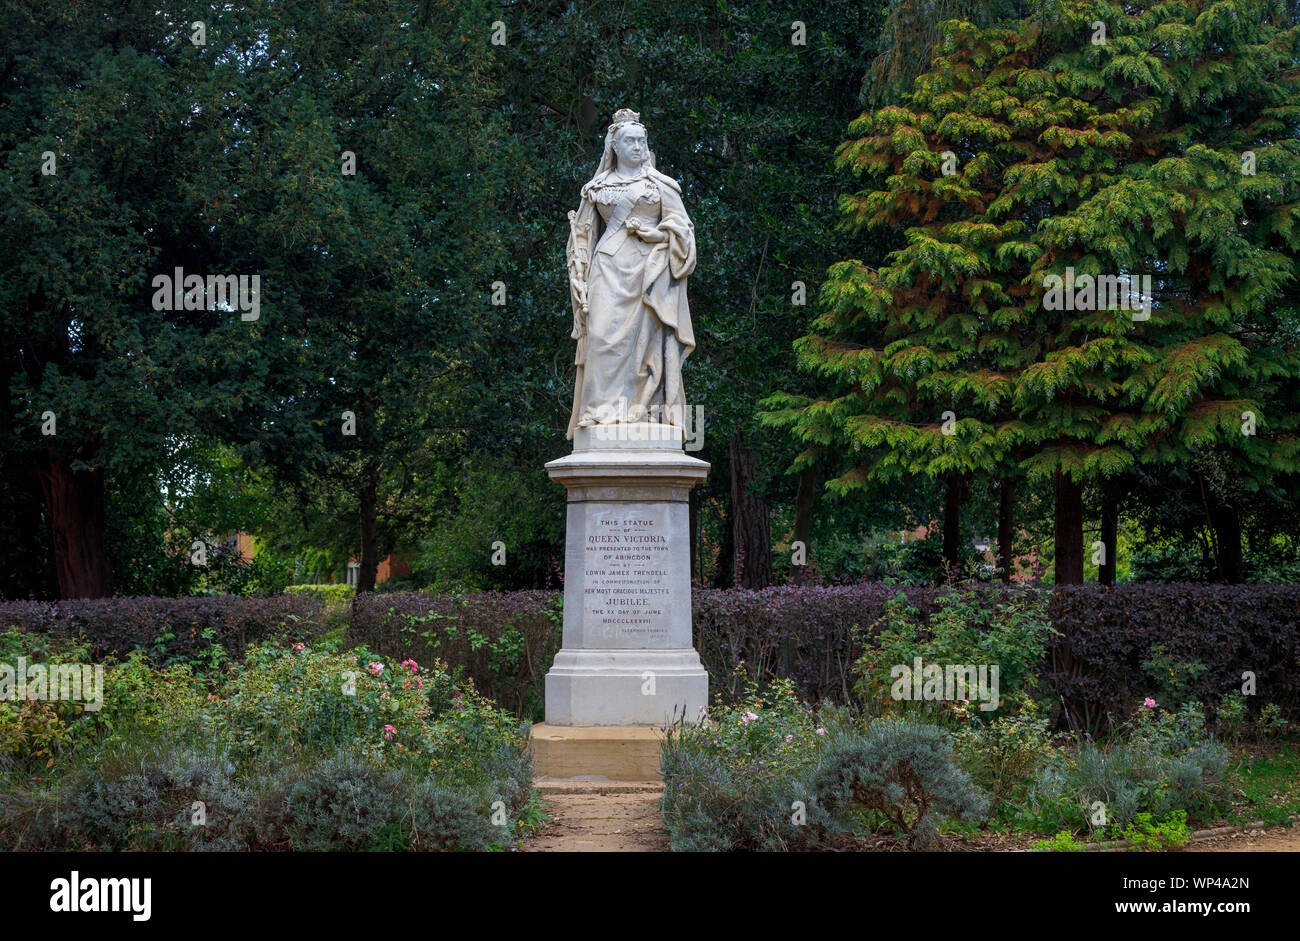 Statua della regina Victoria per commemorare il suo Giubileo d oro nel 1887 in Abbey Gardens, Abingdon-on-Thames, Oxfordshire, sud-est dell'Inghilterra, Regno Unito Foto Stock